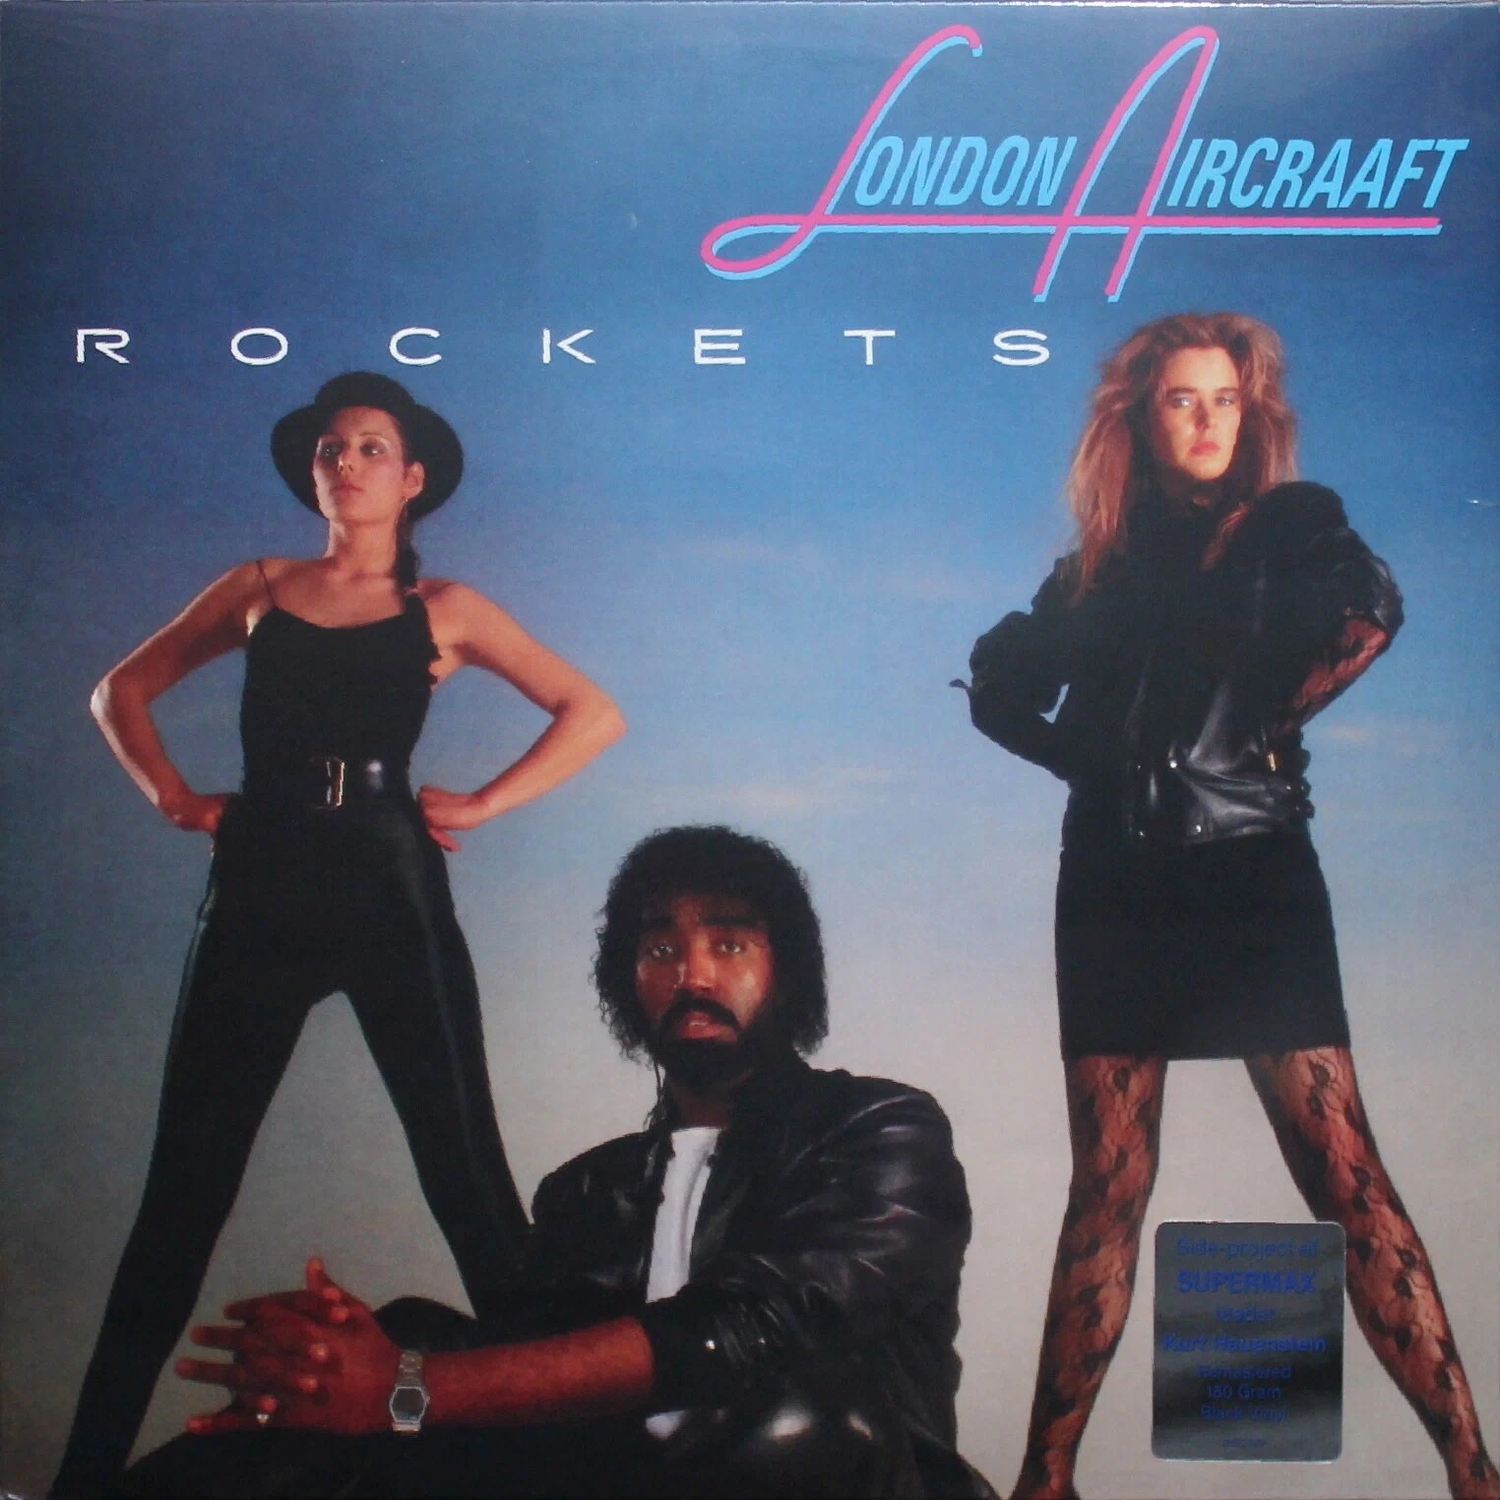 Виниловая Пластинка London Aircraaft Rockets (4601620108716) фотографии